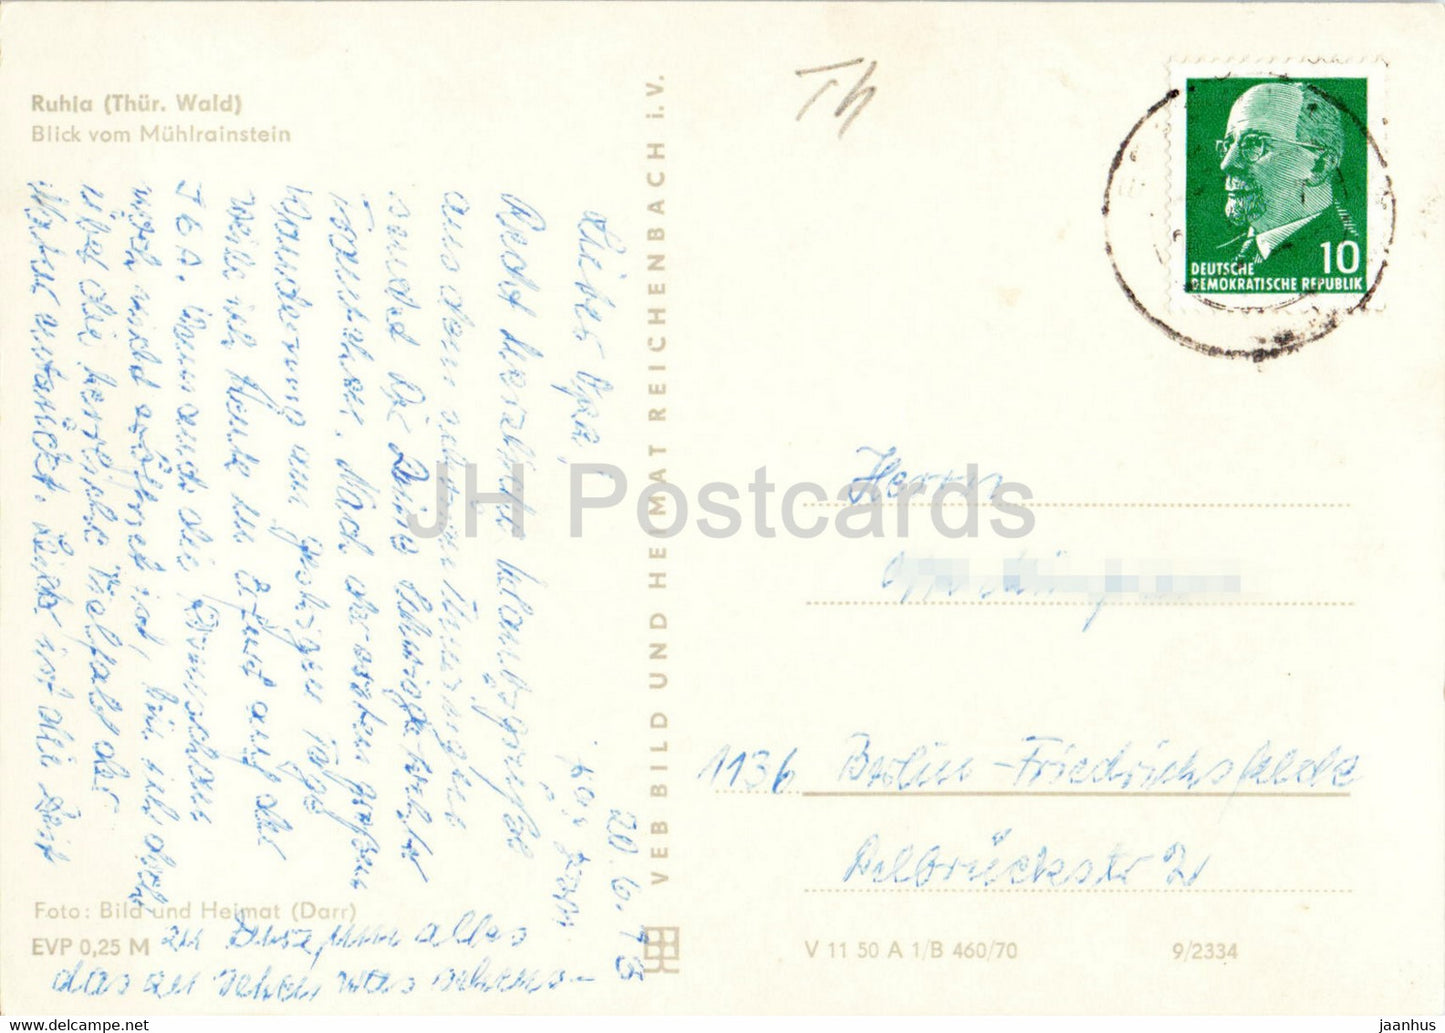 Ruhla - Blick vom Muhlrainstein - carte postale ancienne - 1973 - Allemagne DDR - utilisé